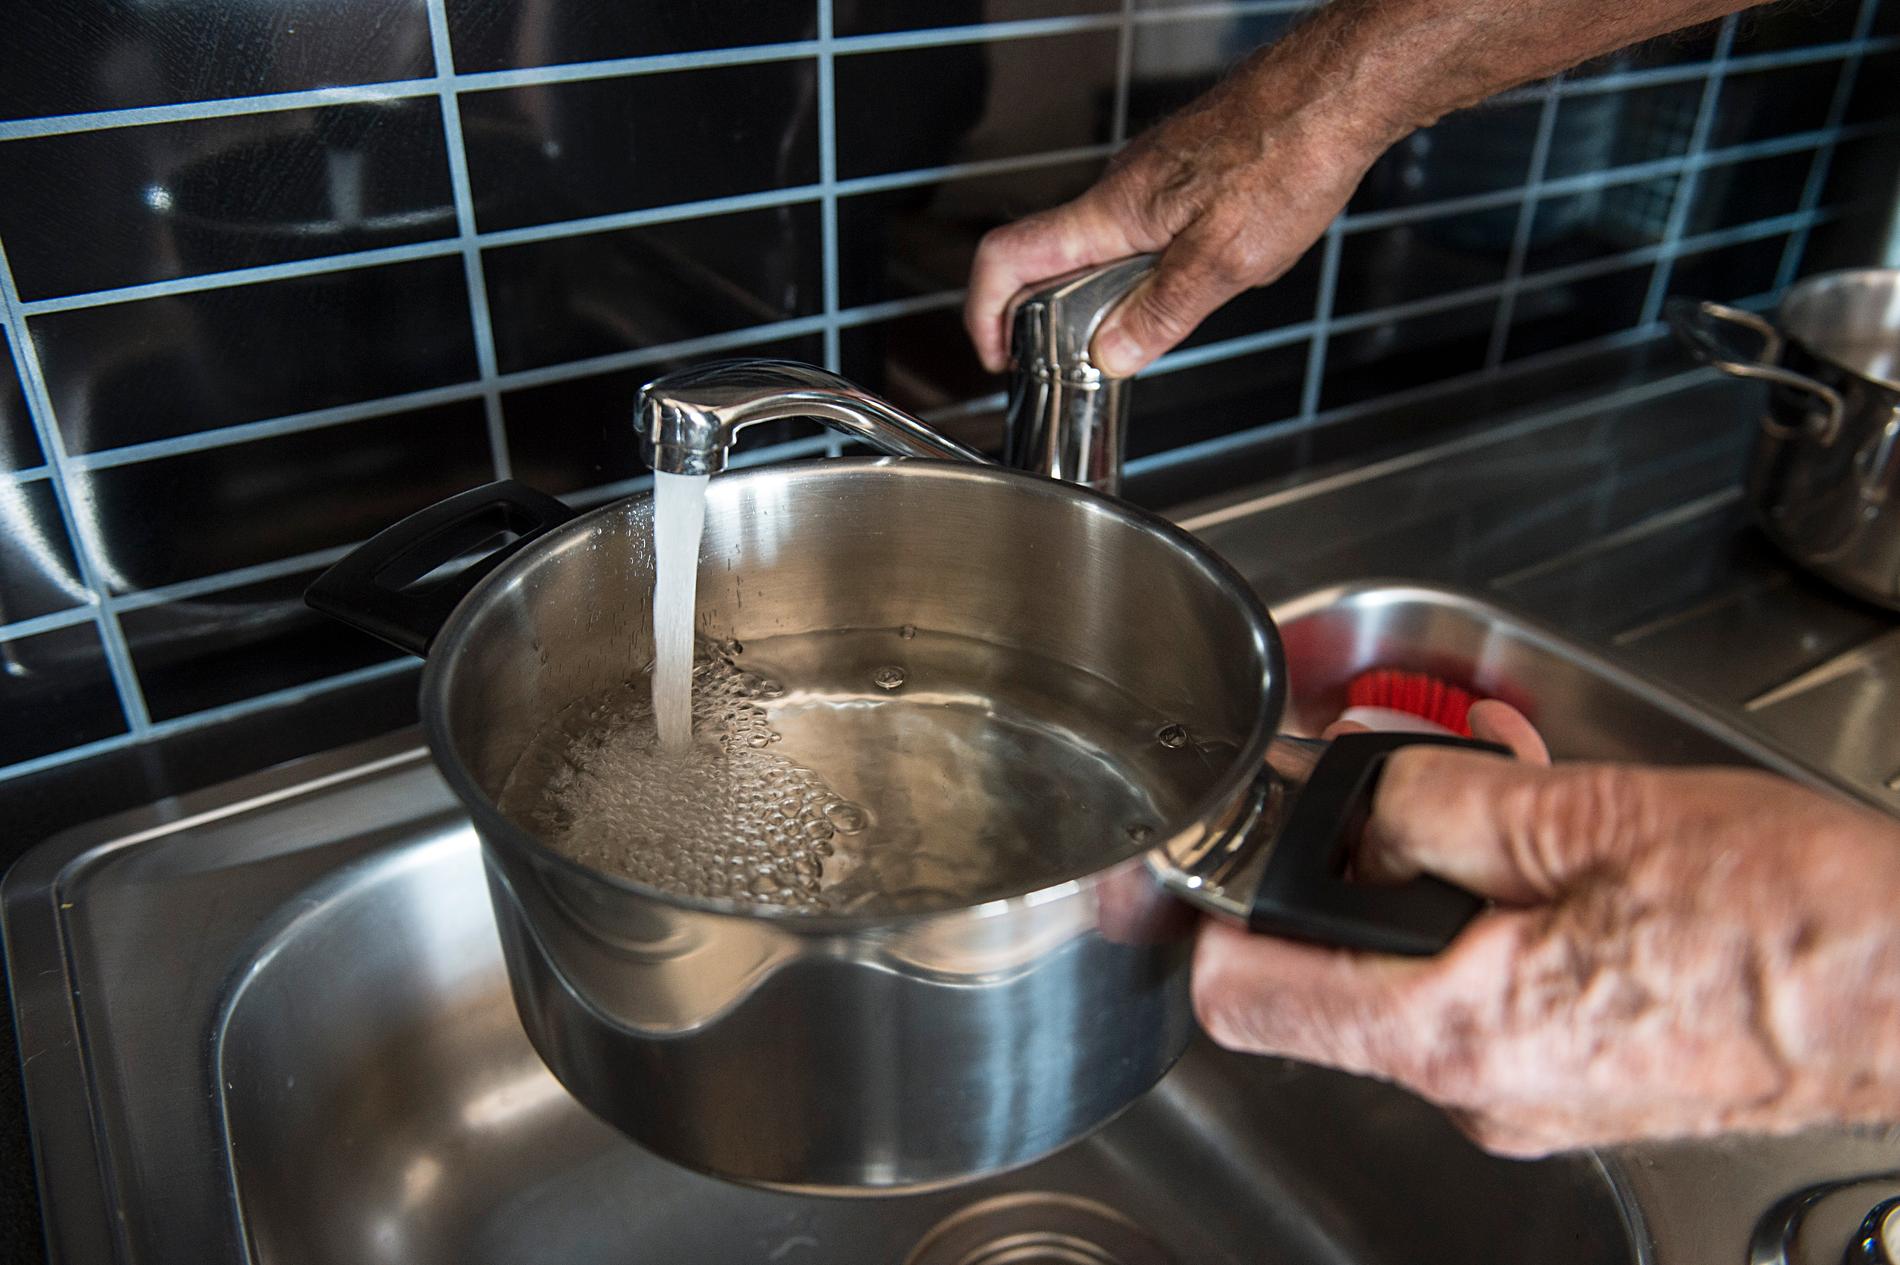 Invånare i norska Askøy måste koka sitt dricksvatten eftersom efter den bassäng som förser Askøy med dricksvatten visat sig innehålla E. coli-bakterier, Clostridium och intestinala enterokocker.